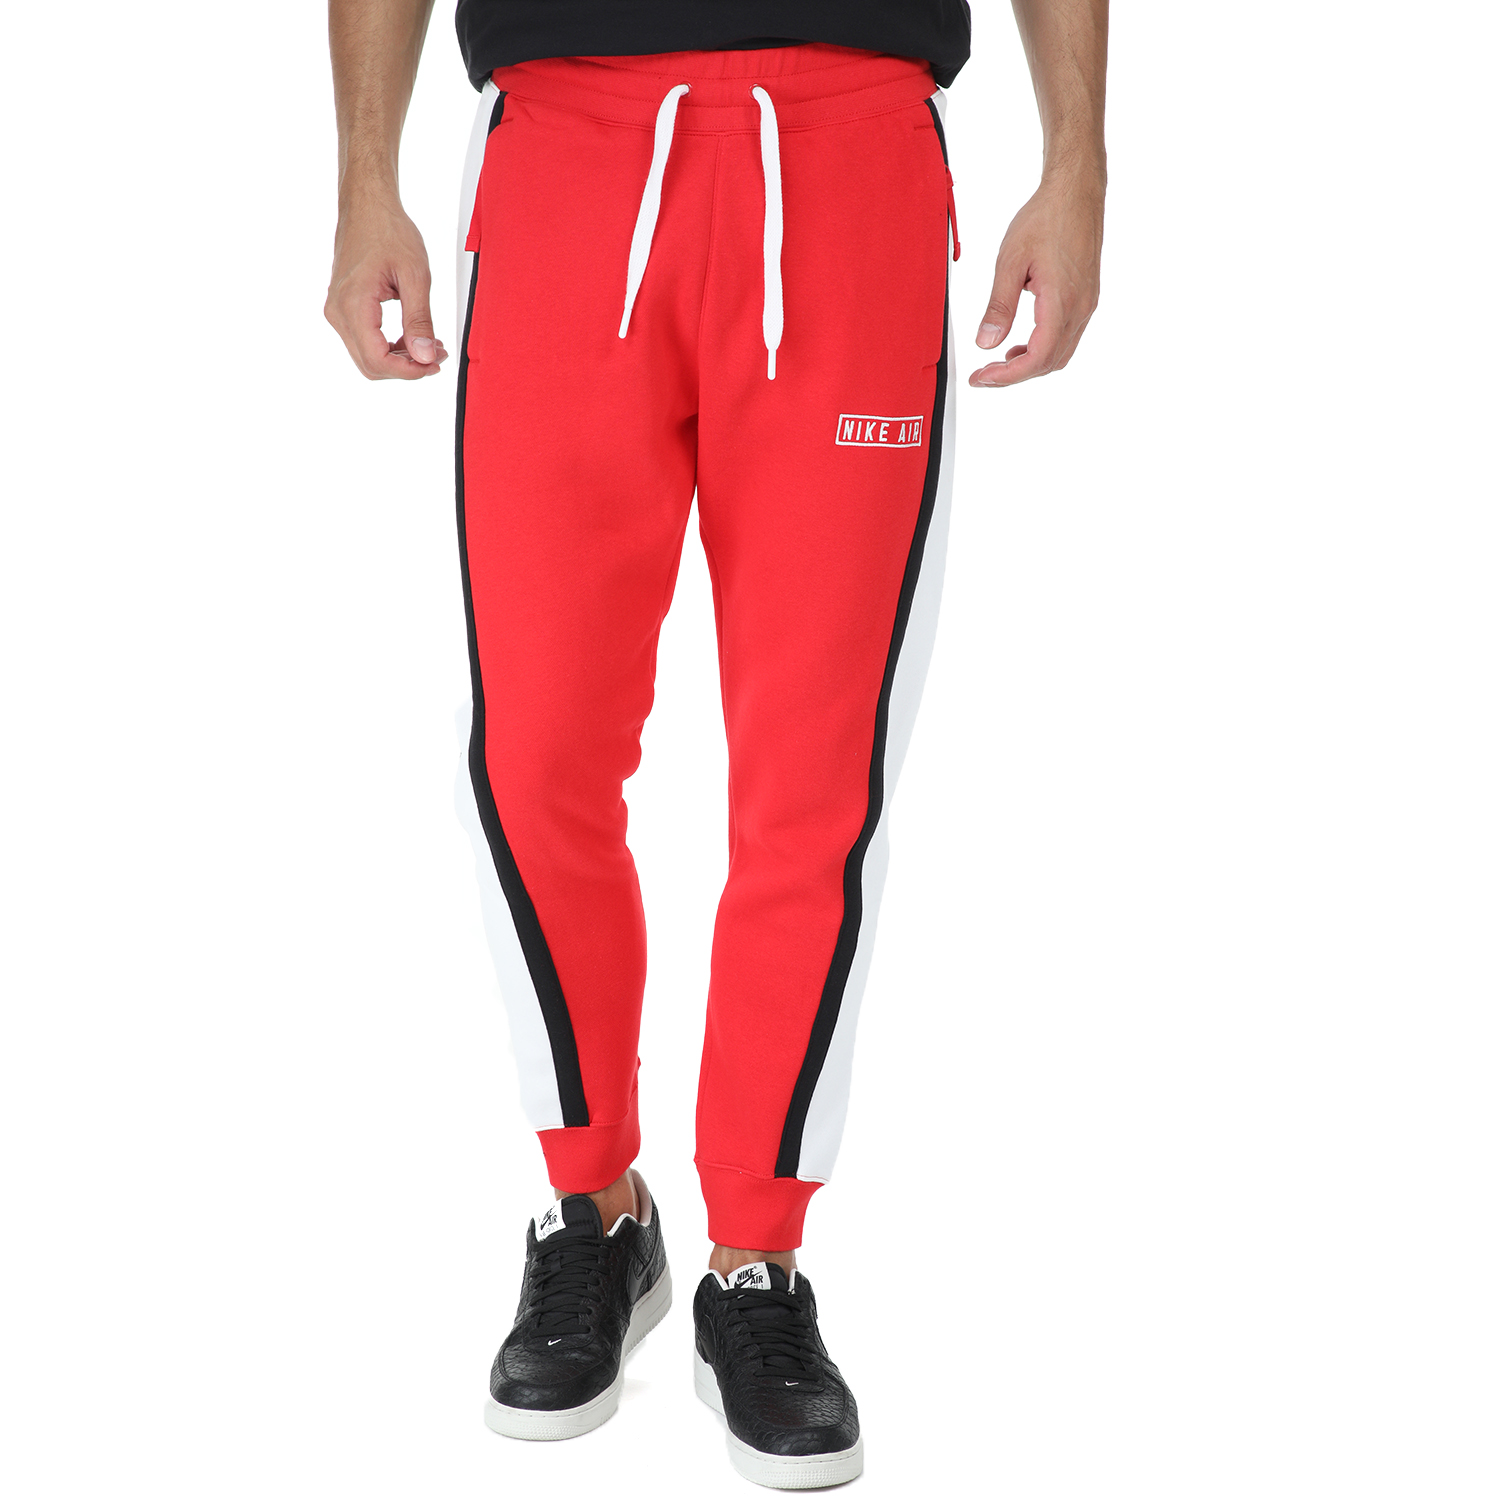 Ανδρικά/Ρούχα/Αθλητικά/Φόρμες NIKE - Ανδρικό παντελόνι φόρμας NIKE AIR κόκκινο